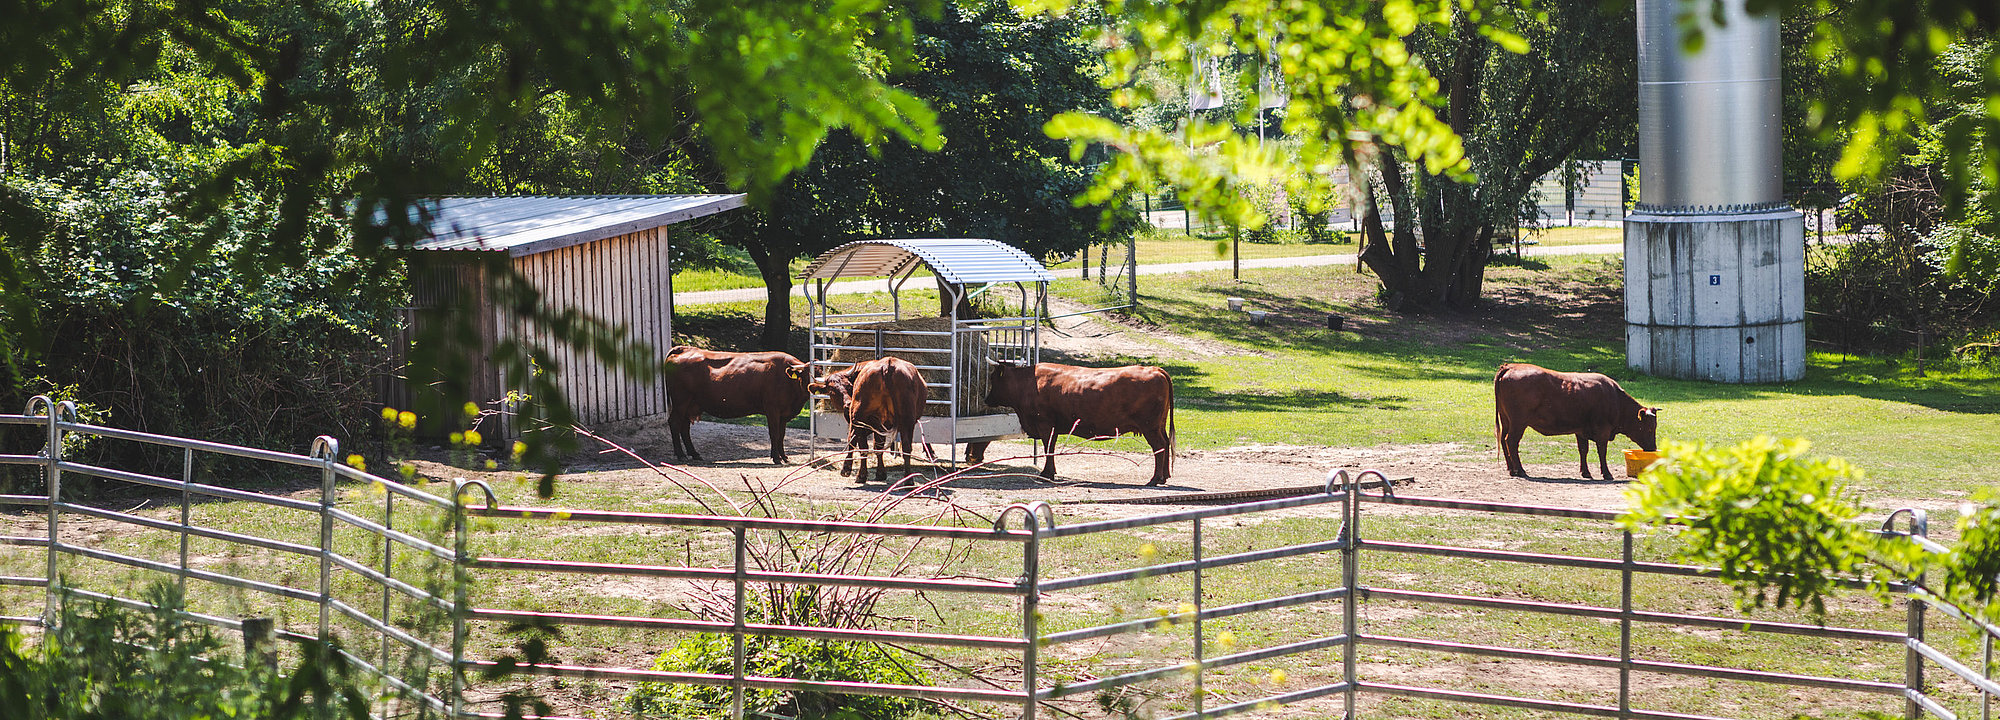 Tiere grasen auf den Beweidungsflächen im Kienbergpark